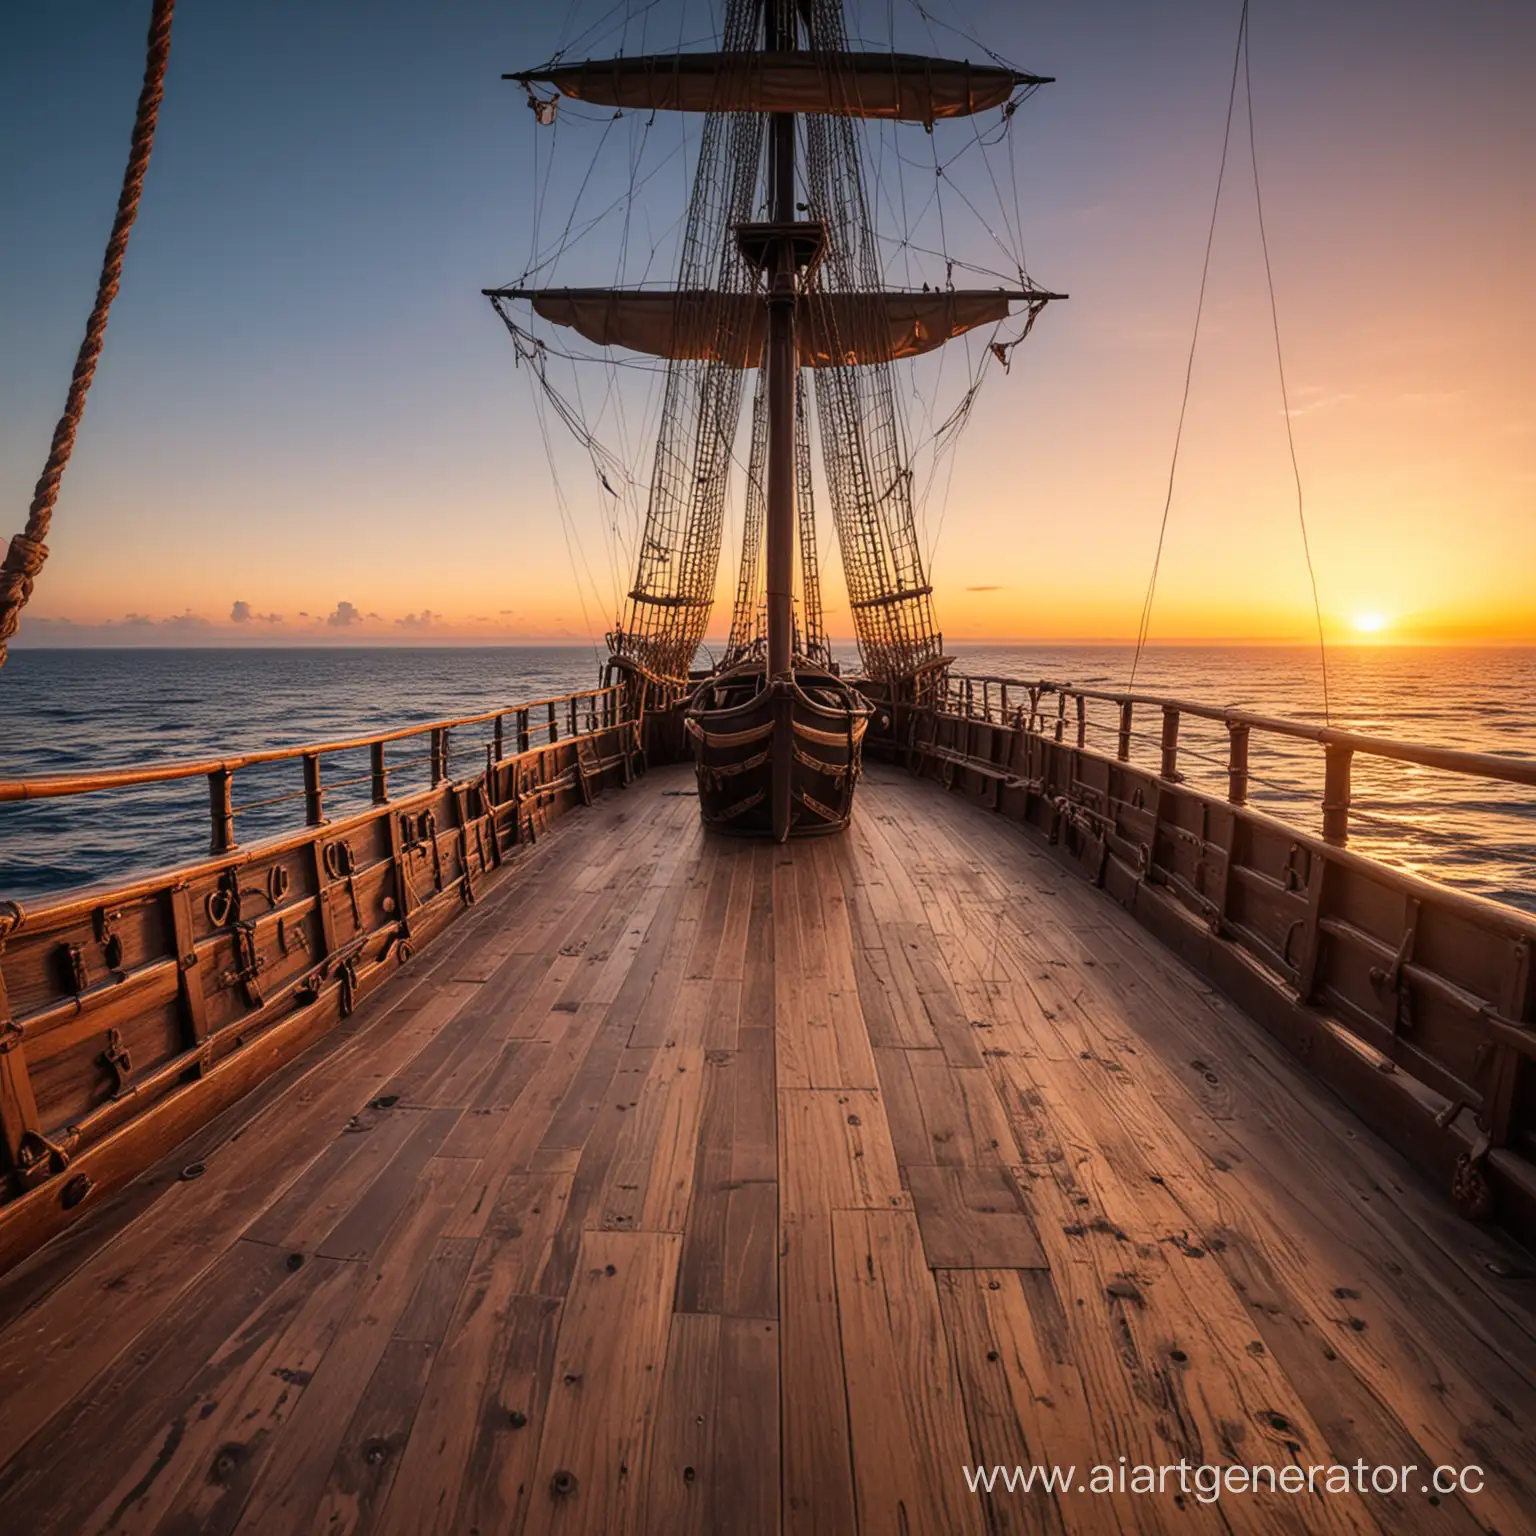 палуба пиратского корабля на фоне бескрайнего океана в закате